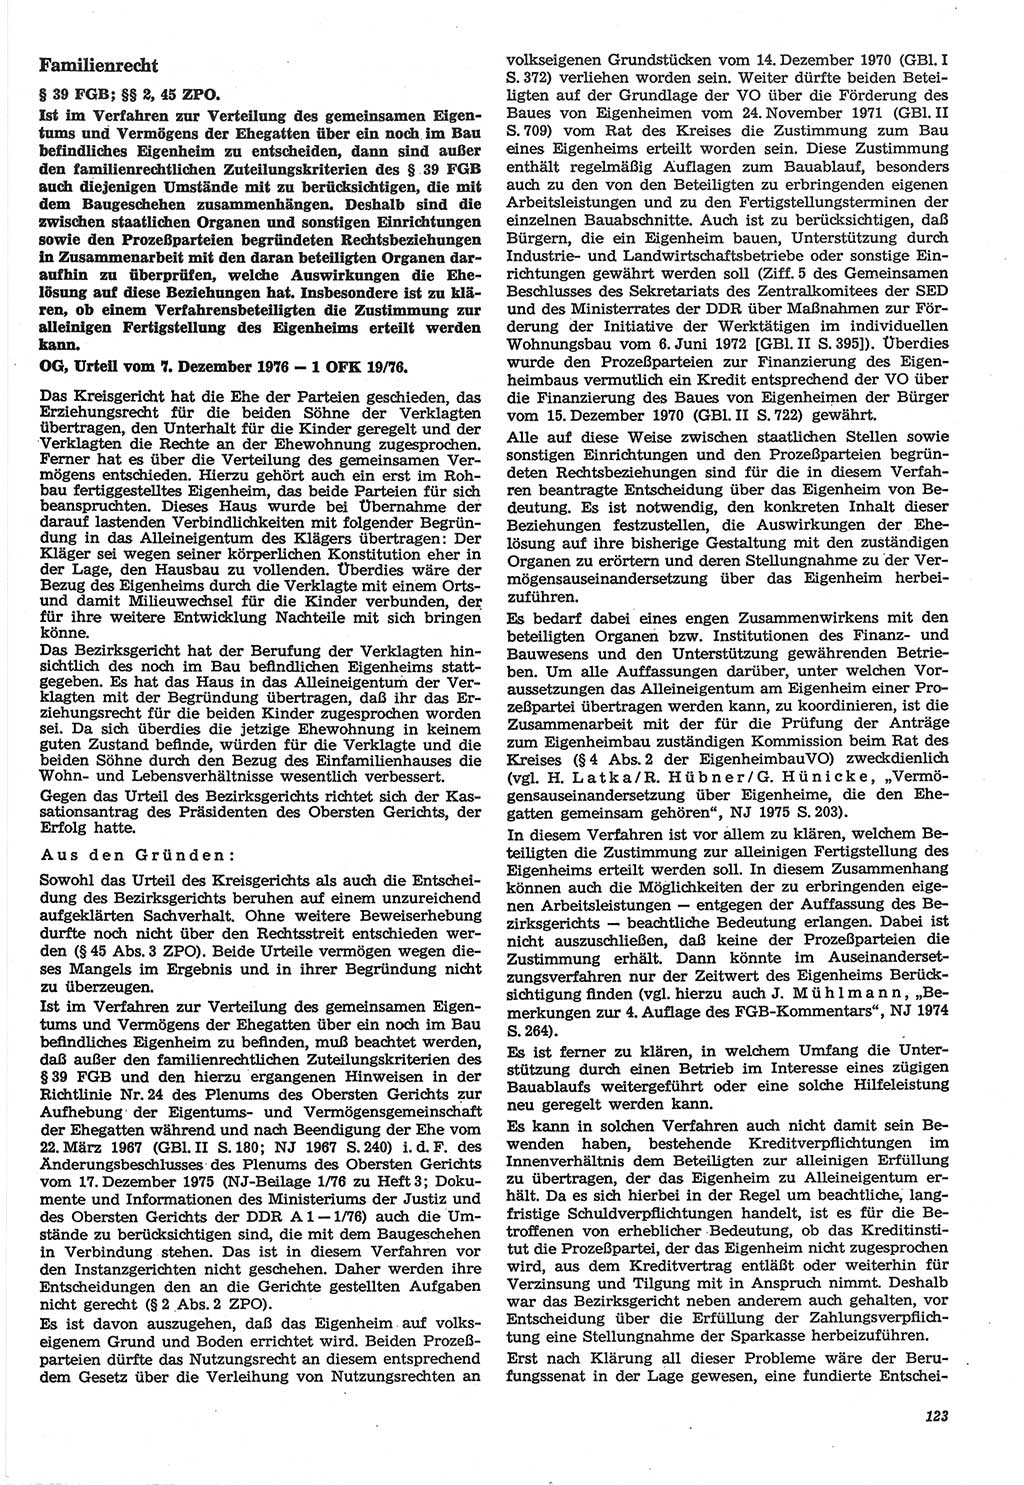 Neue Justiz (NJ), Zeitschrift für Recht und Rechtswissenschaft-Zeitschrift, sozialistisches Recht und Gesetzlichkeit, 31. Jahrgang 1977, Seite 123 (NJ DDR 1977, S. 123)